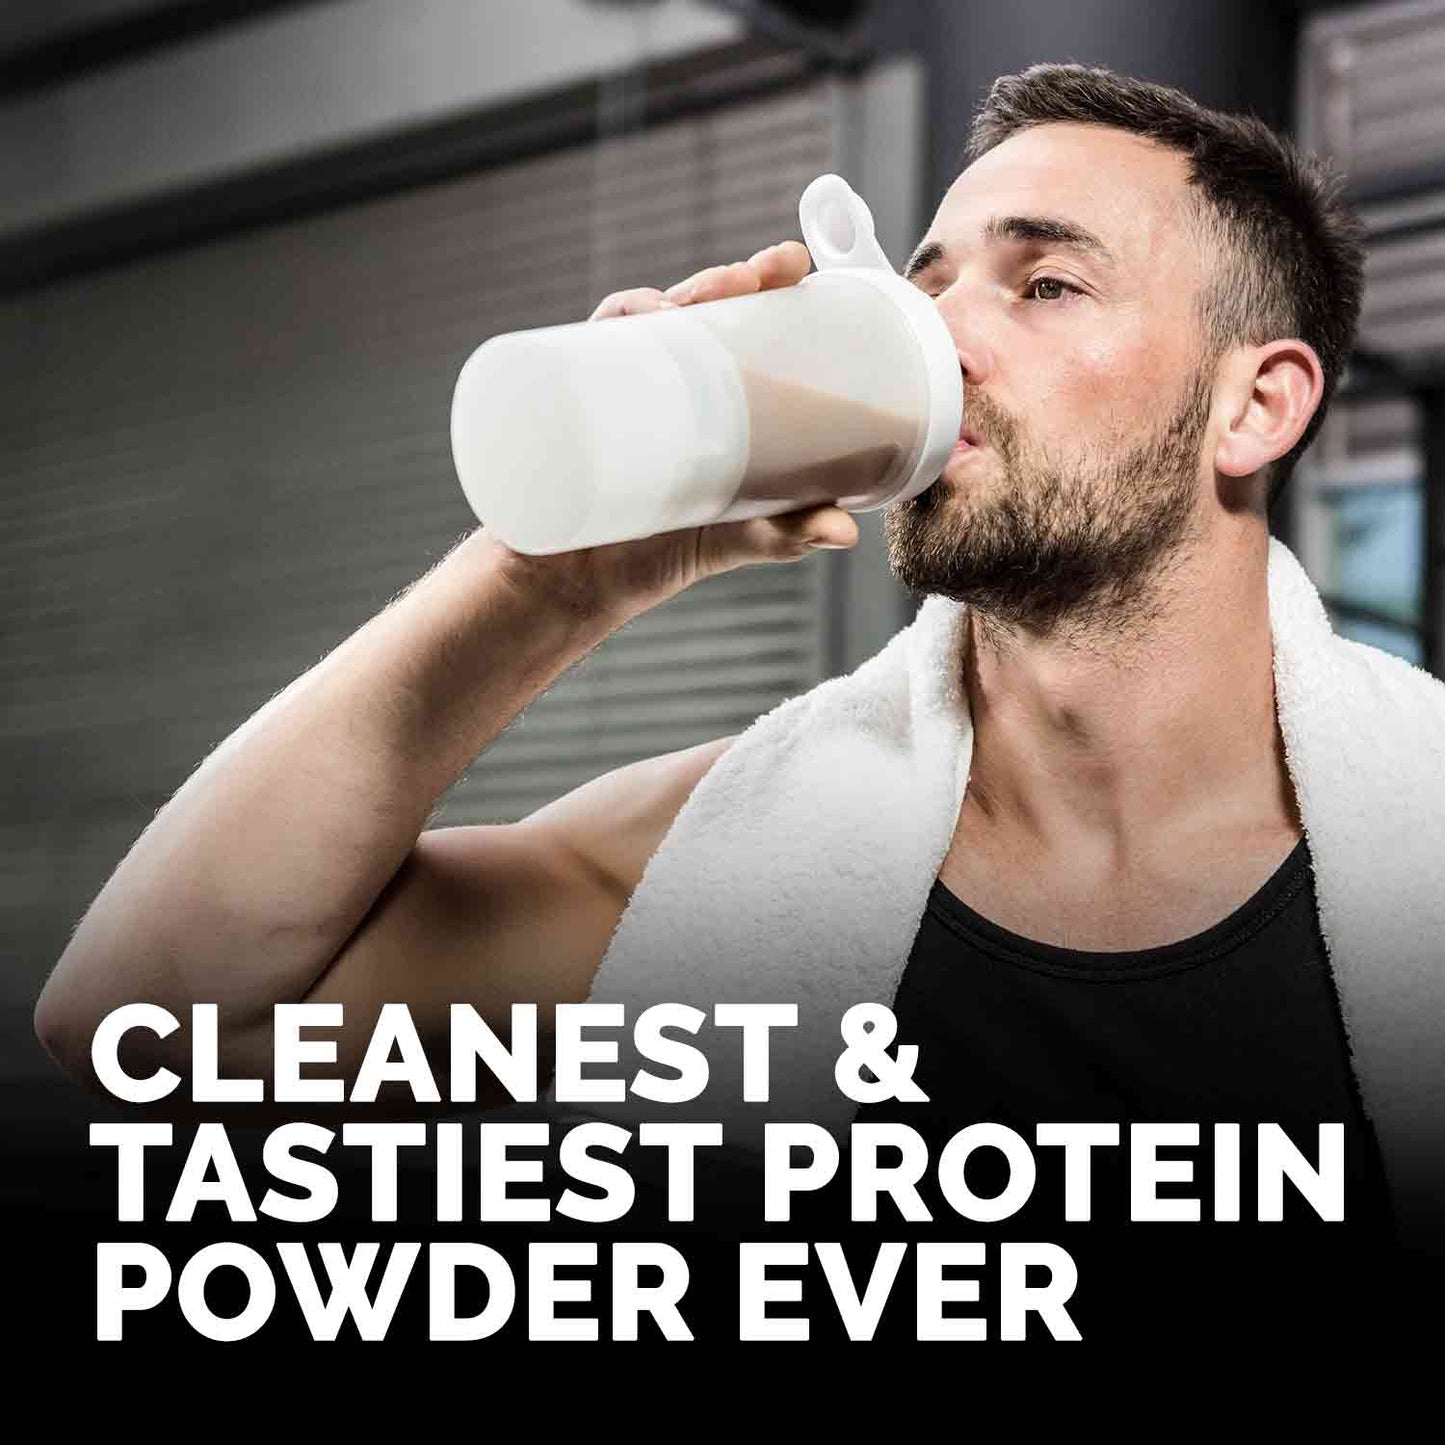 Auric Vegan Plant Protein Powder for Men & Women  8 Sachet